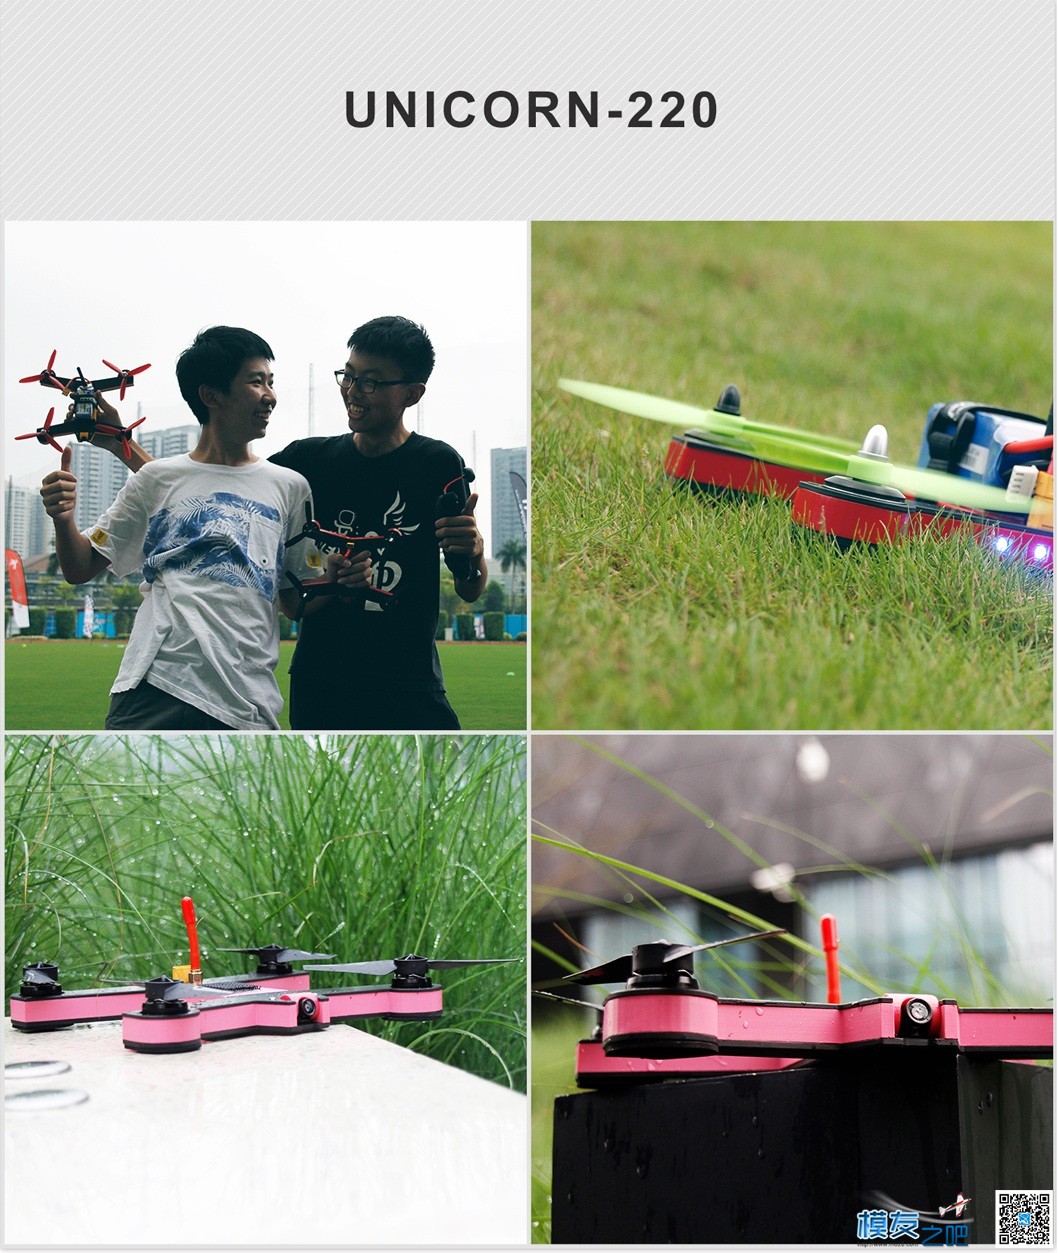 独角兽unicorn220北京国际航模展发布 北京国际,独角兽 作者:FPV-FINE 5476 